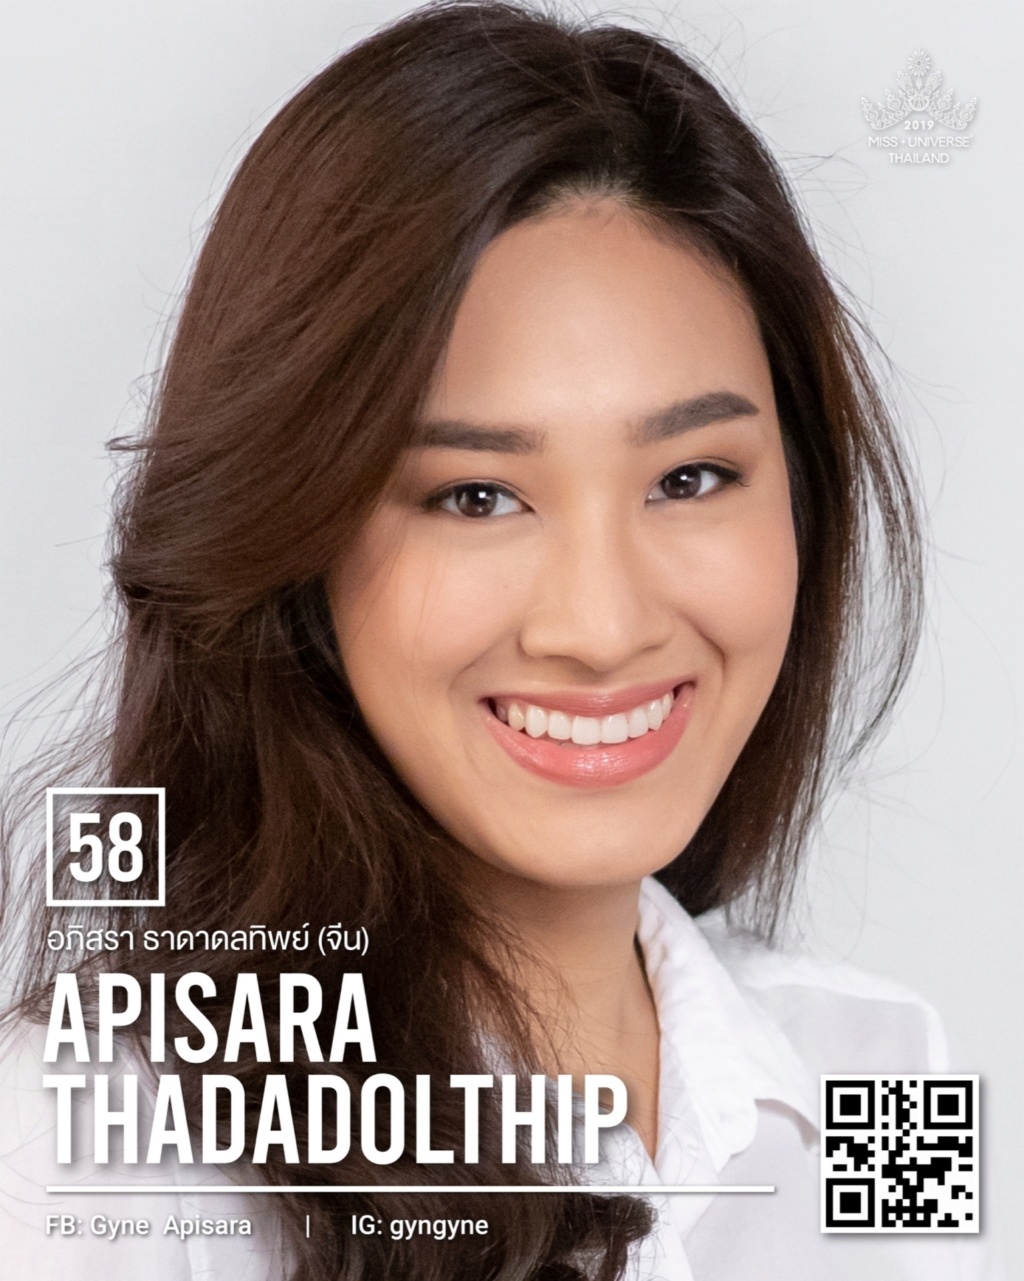 Miss Universe THAILAND 2019 - PORTRAITS!  - Page 3 6376